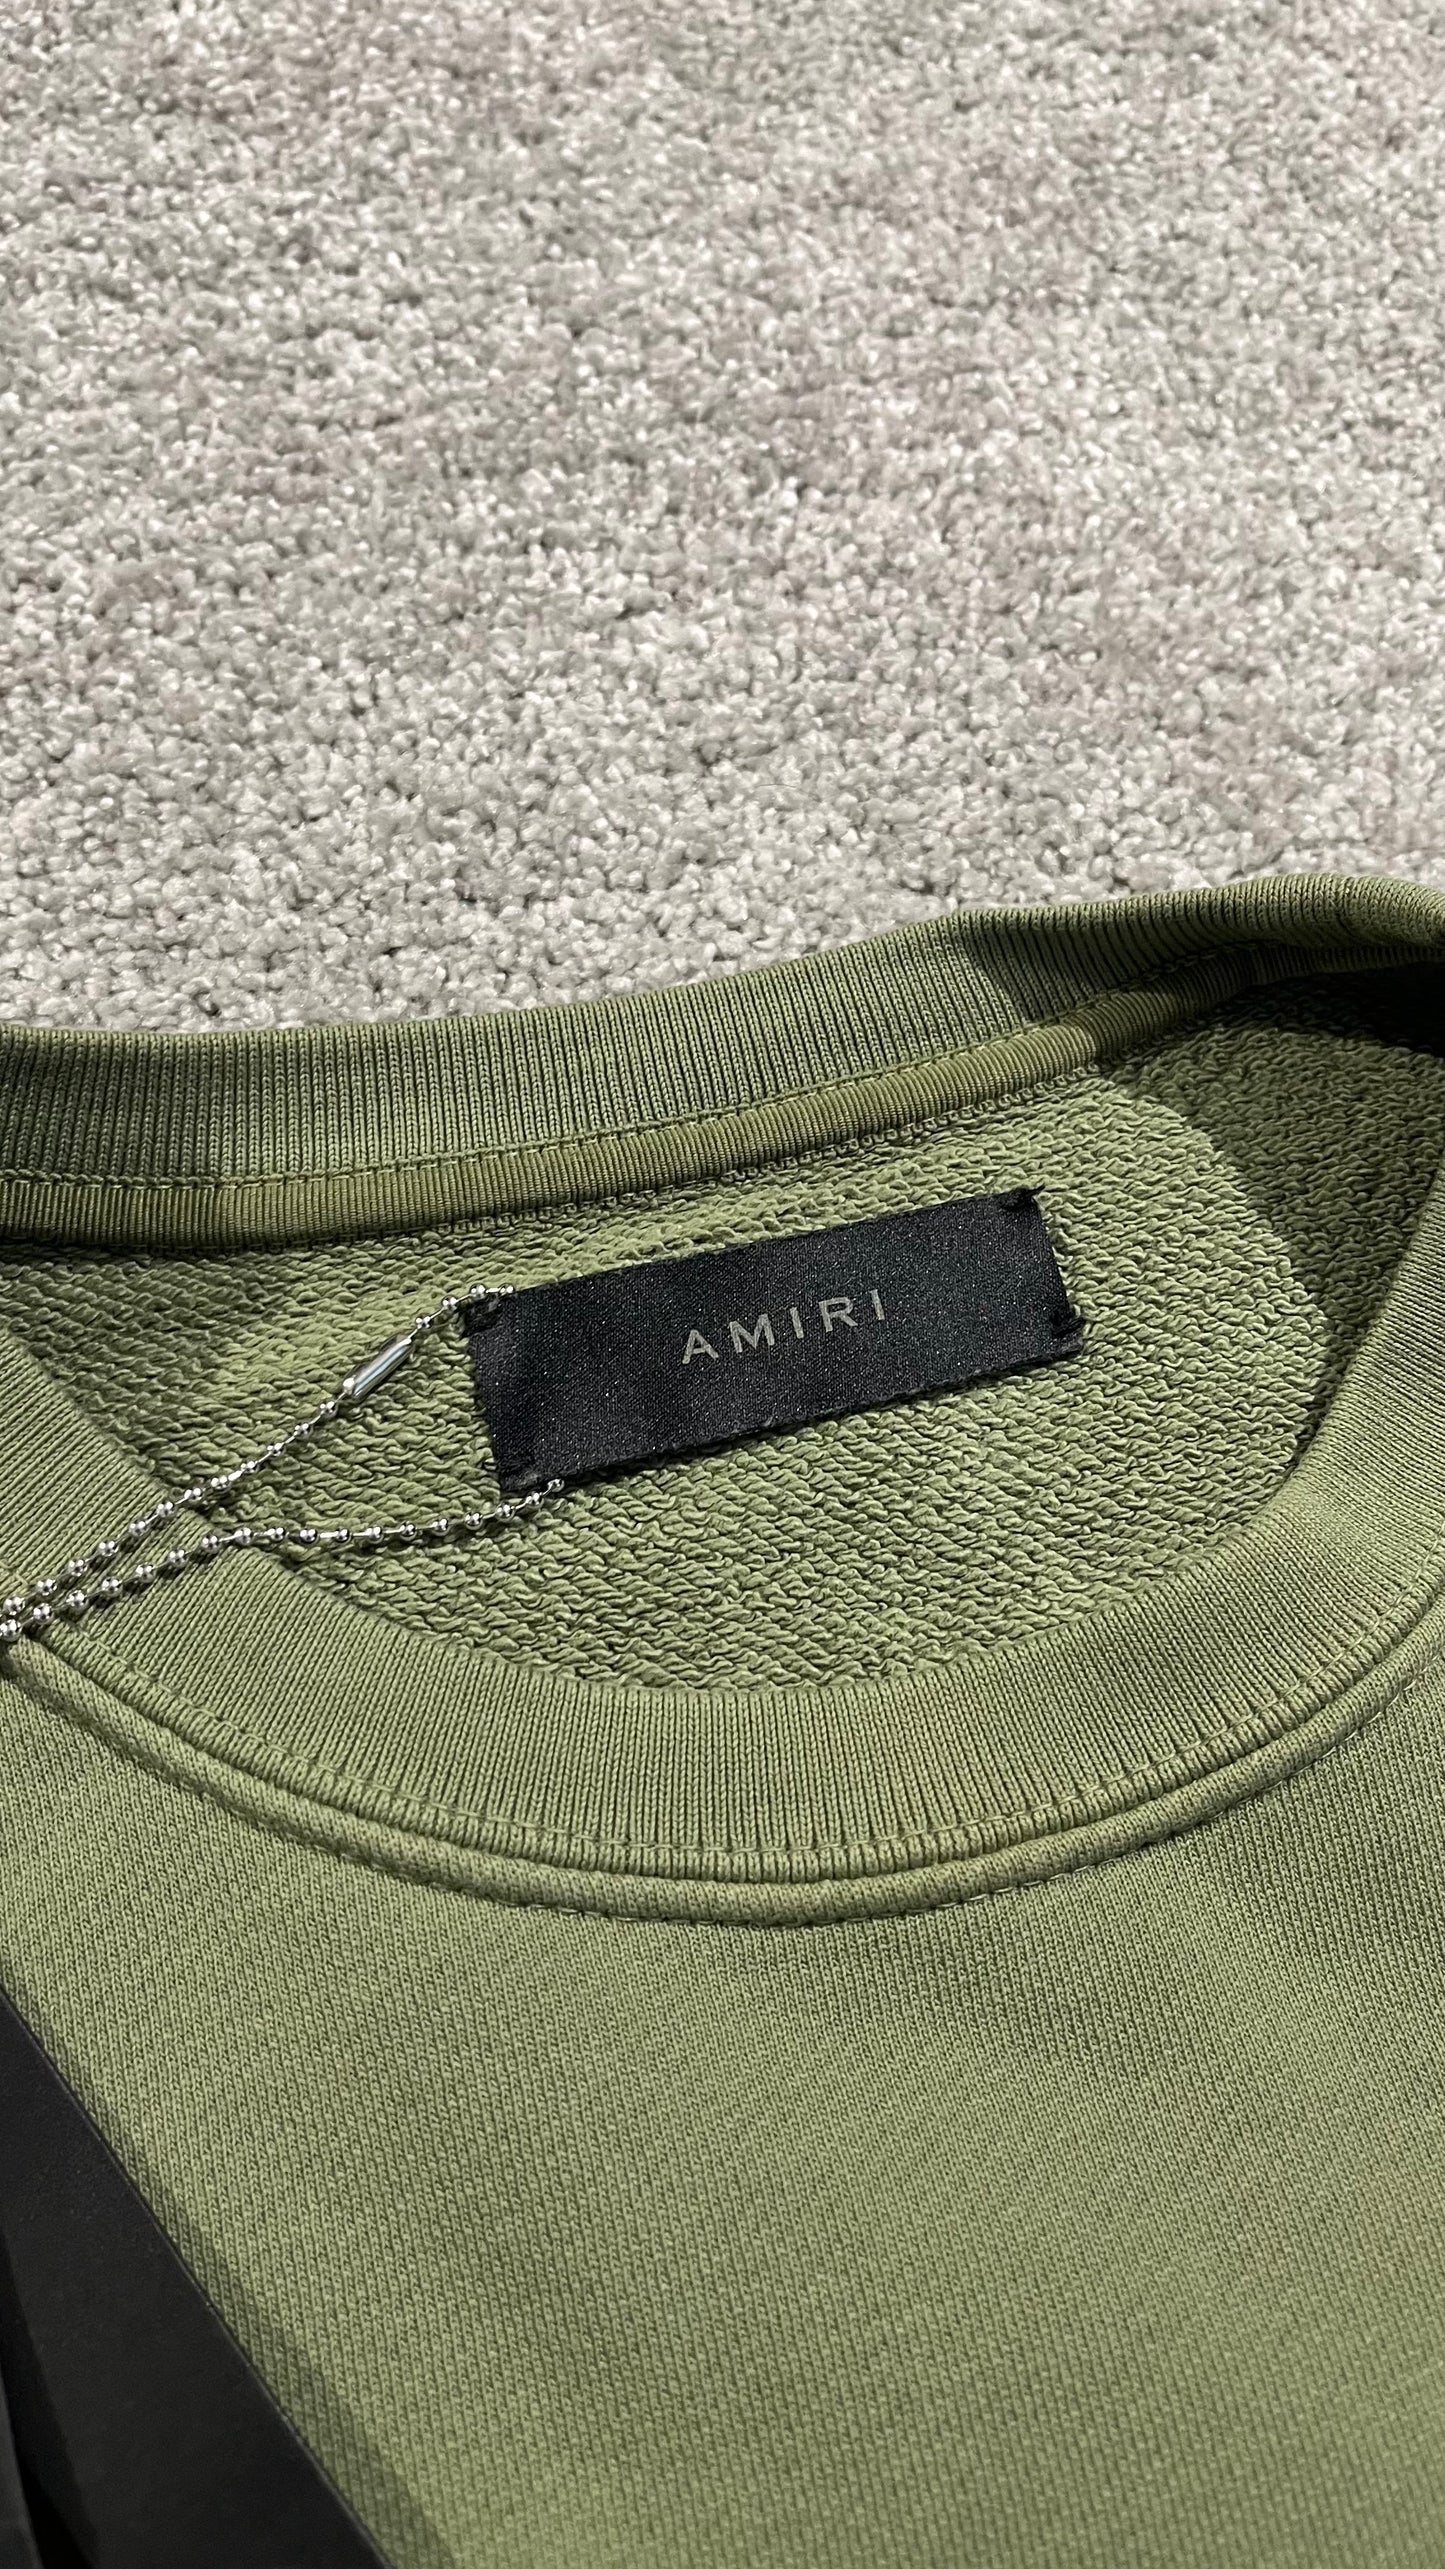 Amiri Core Sweatshirt